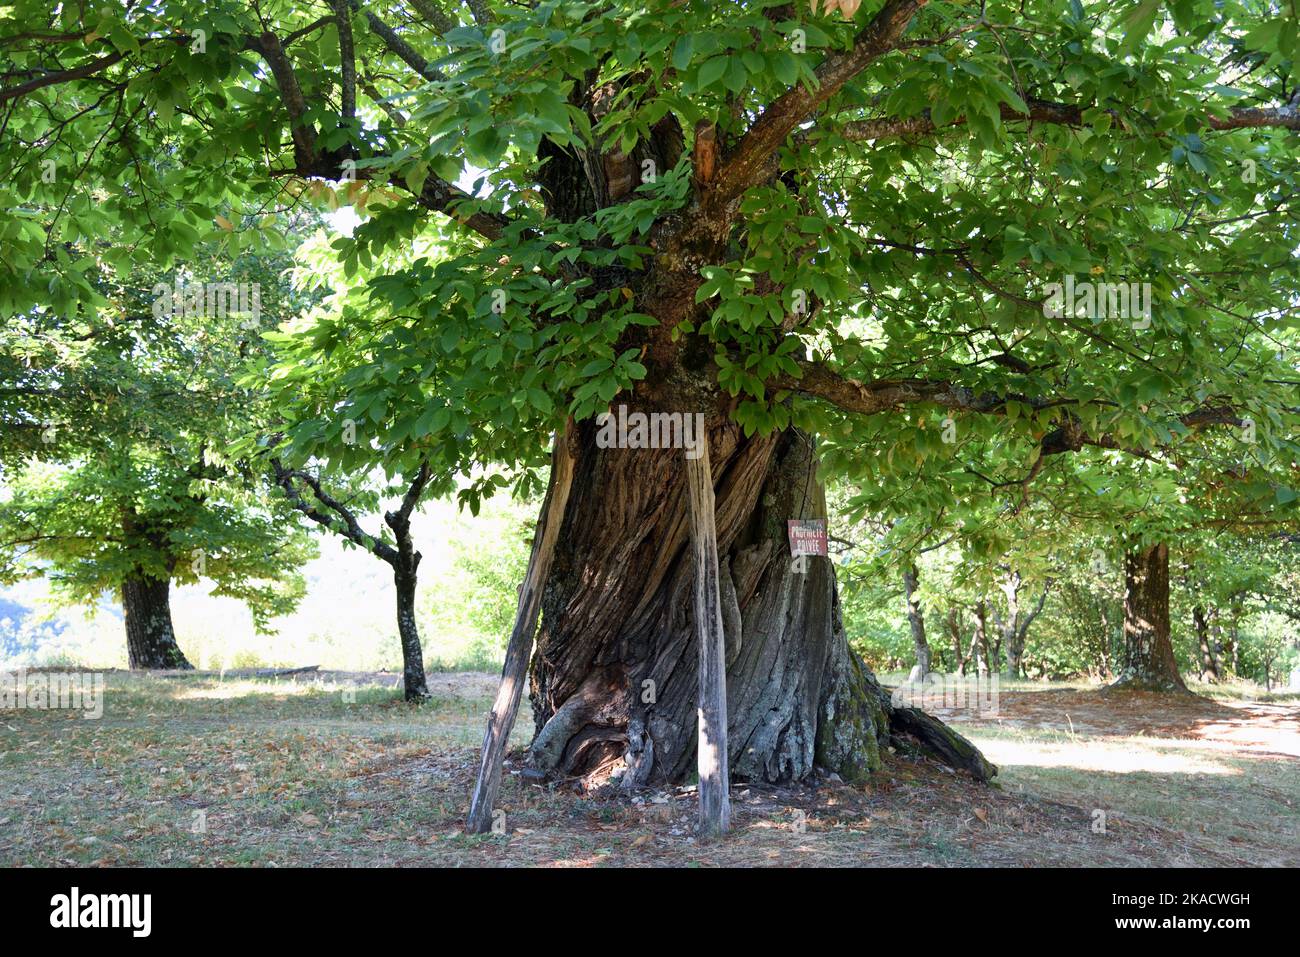 Old Sweet Chestnut Tree, Castanea sativa, mit hölzernen Requisiten, wächst in Old Chestnut Plantation oder Grove, alias a Castanetum, Drome Provence France Stockfoto